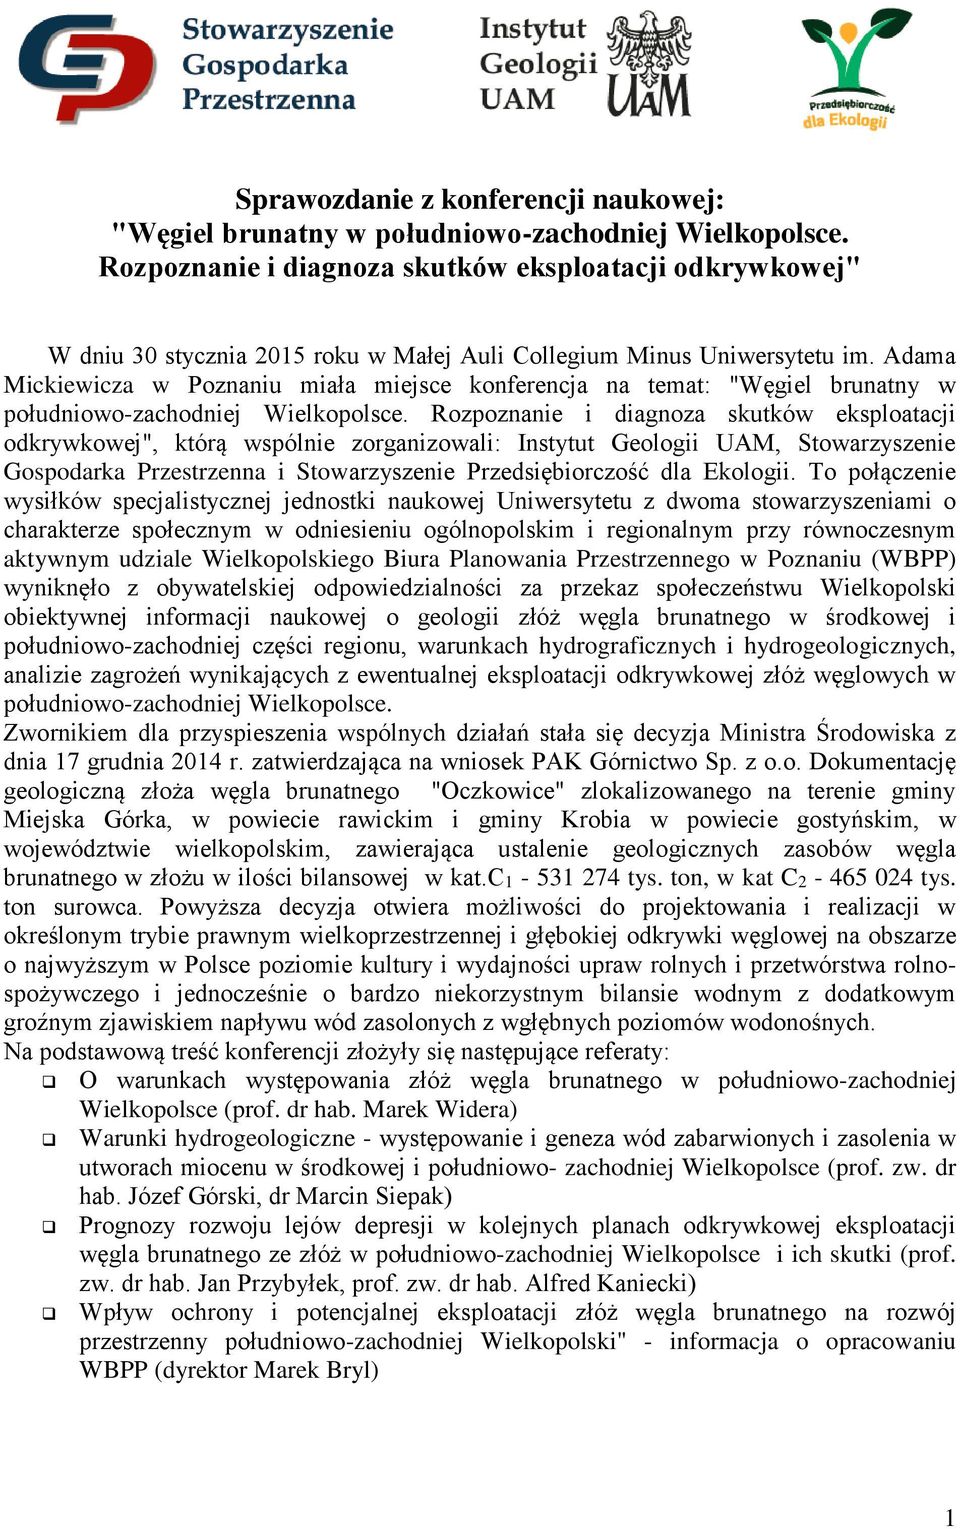 Adama Mickiewicza w Poznaniu miała miejsce konferencja na temat: "Węgiel brunatny w południowo-zachodniej Wielkopolsce.